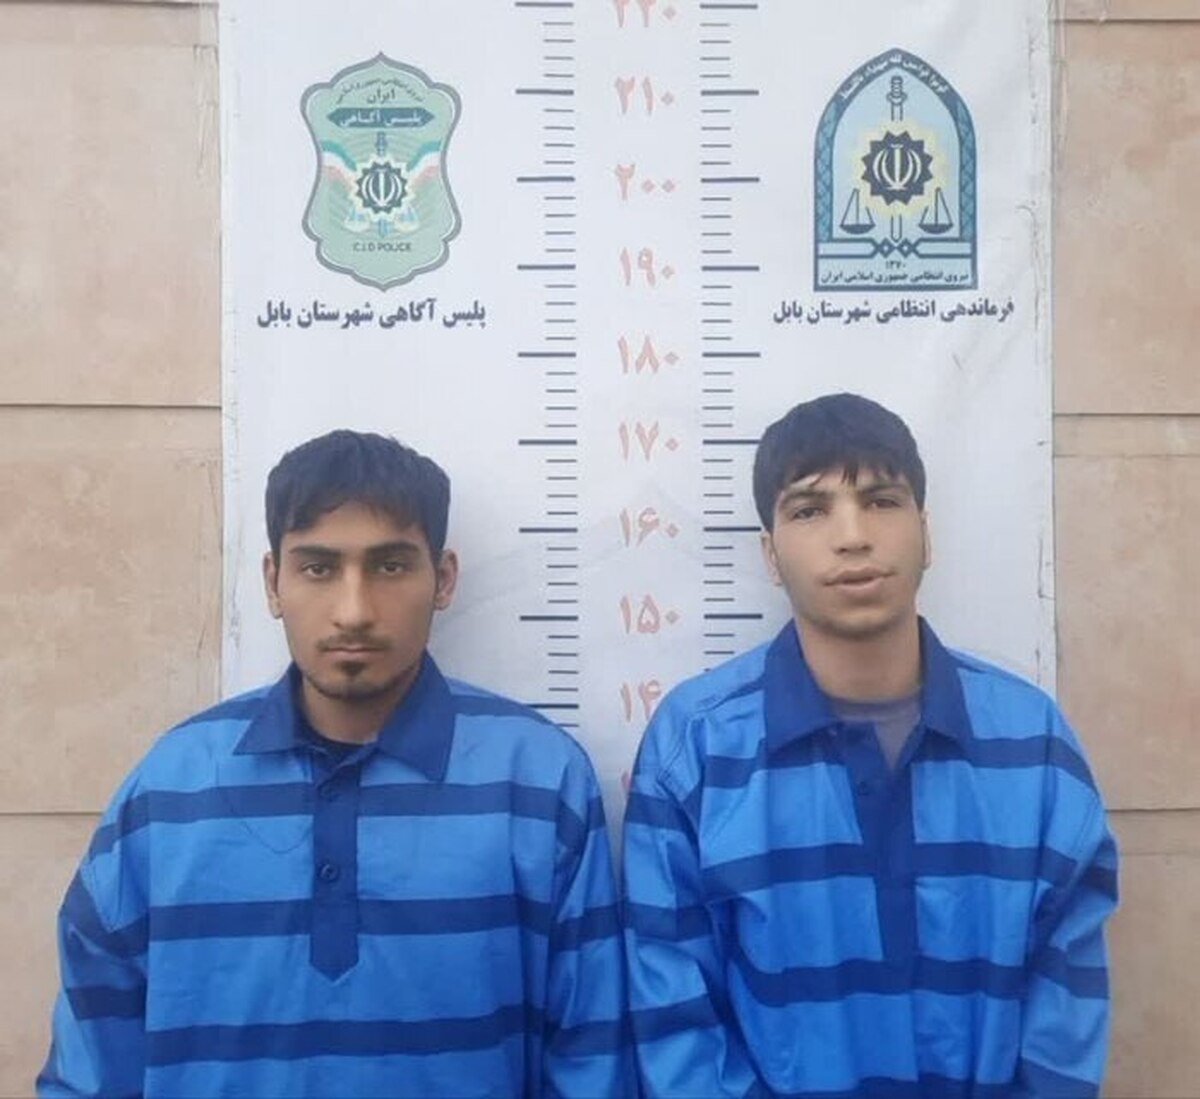 نیروی انتظامی تصویر دو سارق موبایل را منتشر کرد